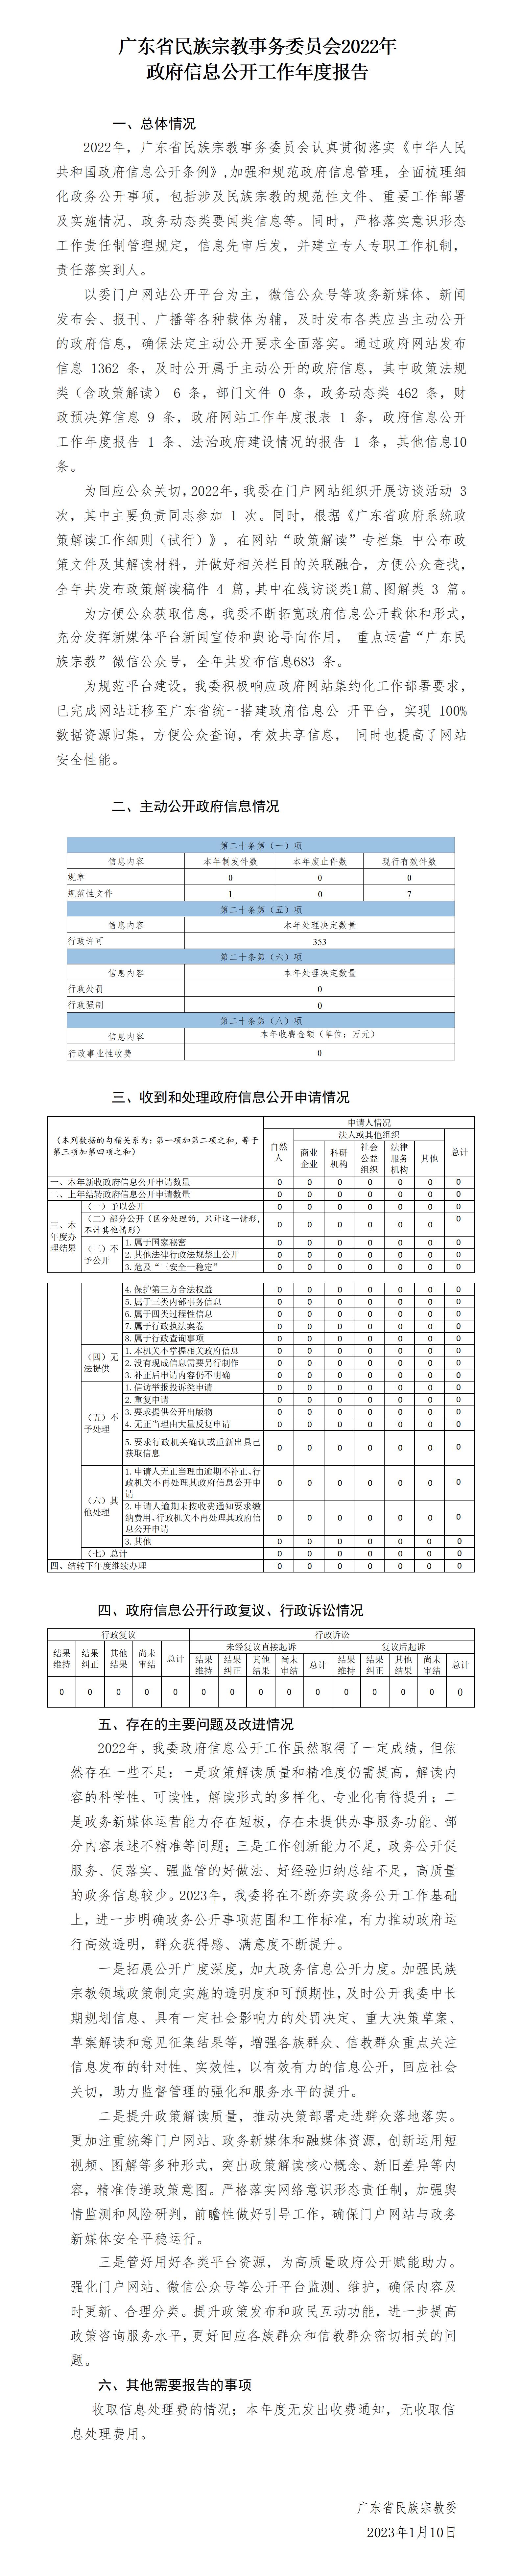 广东省民族宗教事务委员会2022年政府信息公开工作年度报告_01.jpg